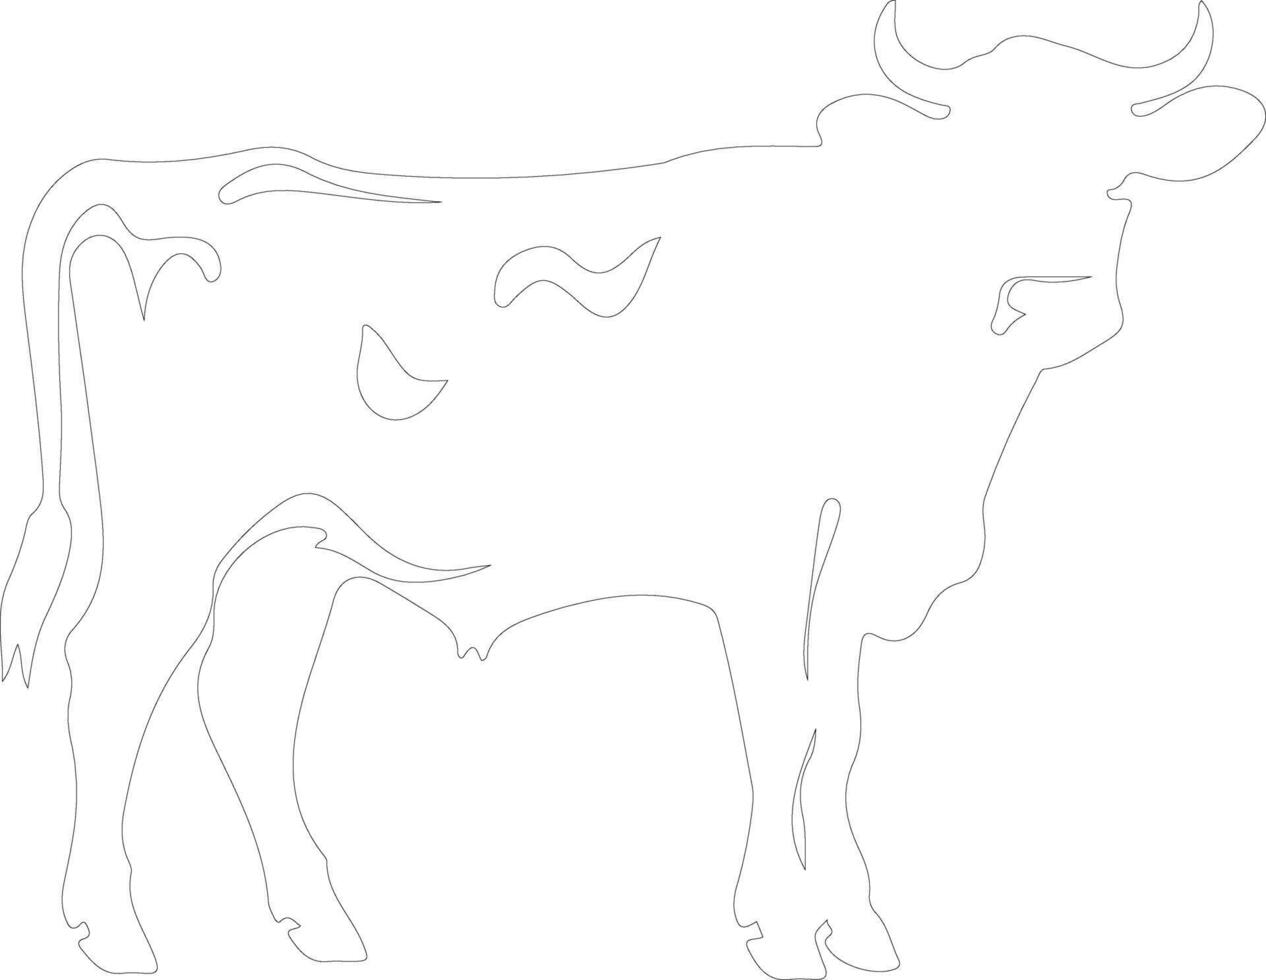 bestiame schema silhouette vettore